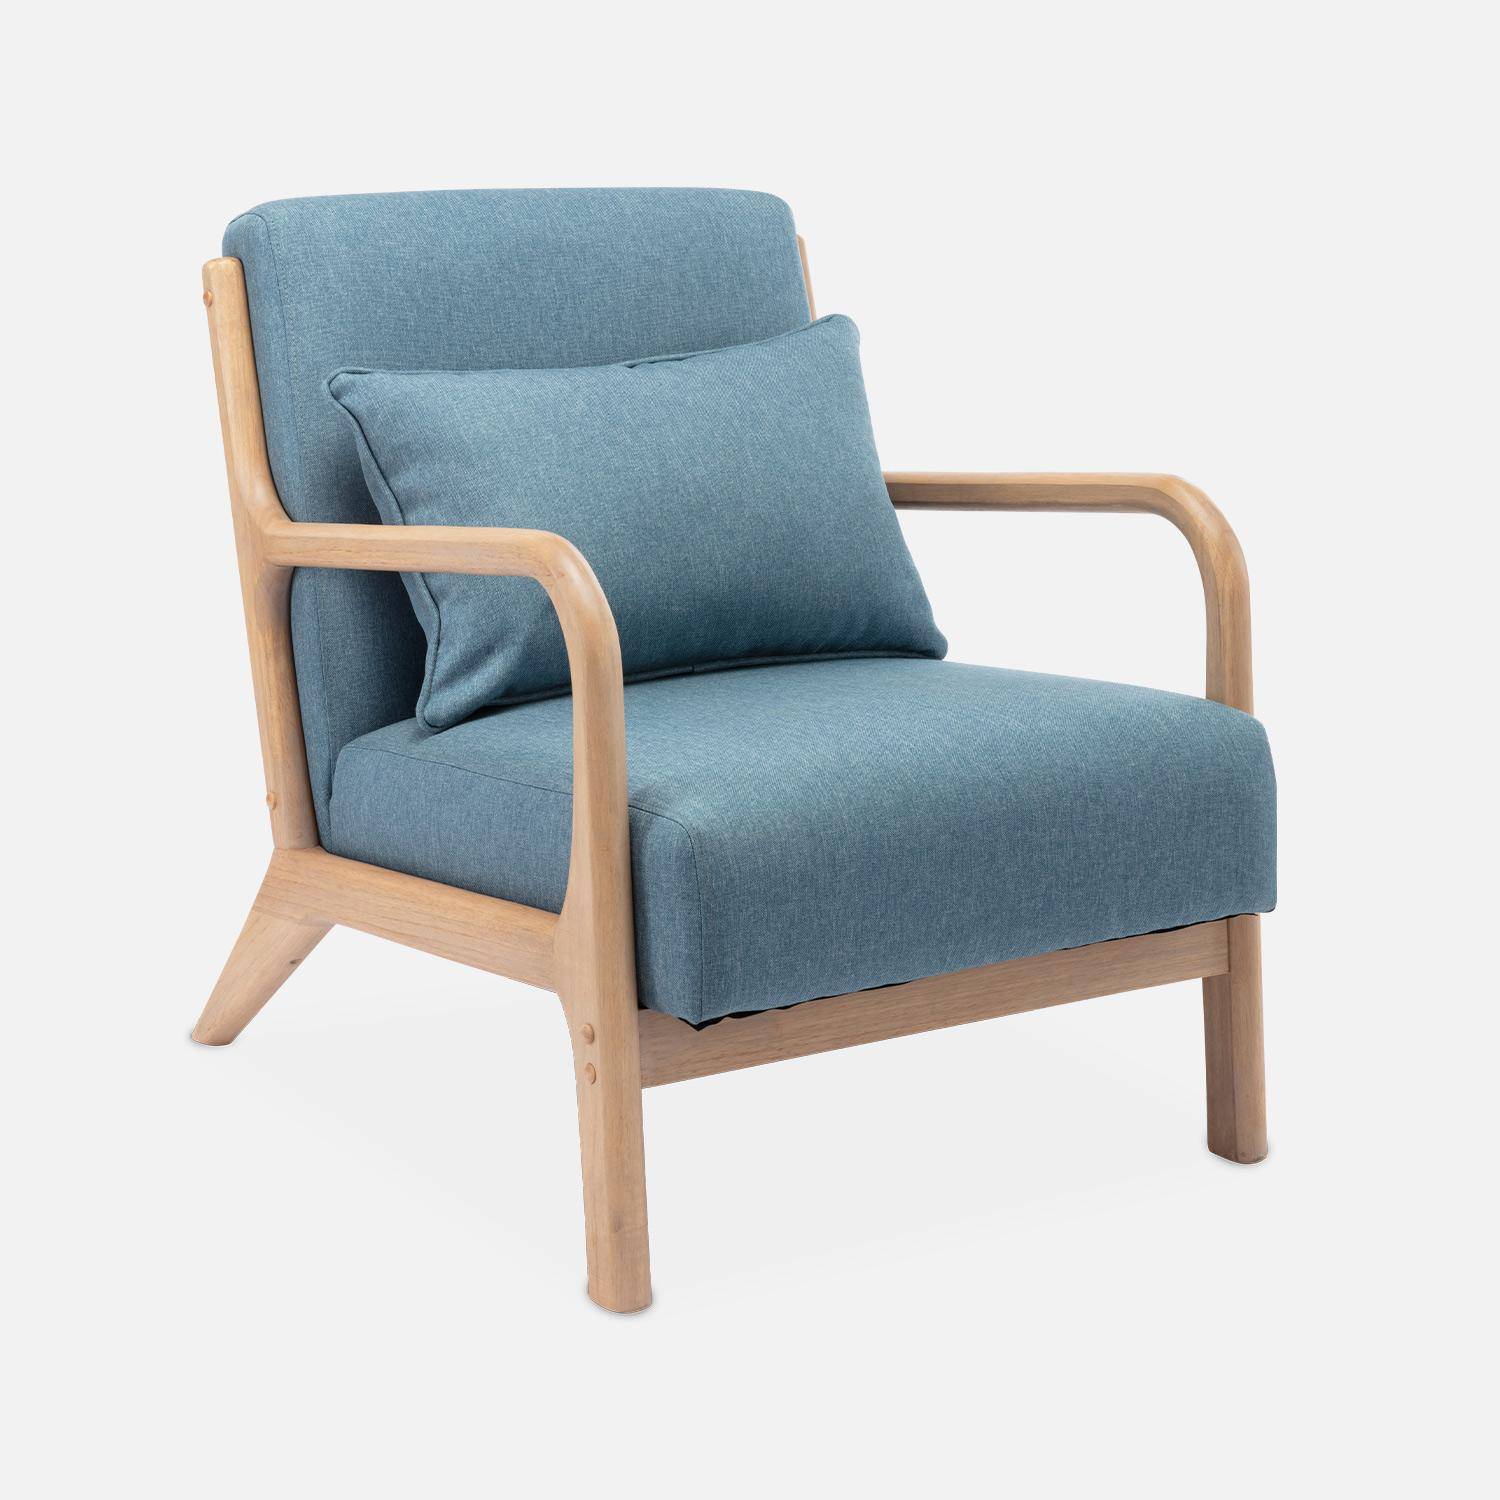 Cadeirão de design em madeira e tecido, 1 assento reto fixo, pernas escandinavas em forma de compasso, assento confortável, estrutura em madeira maciça, azul Photo4